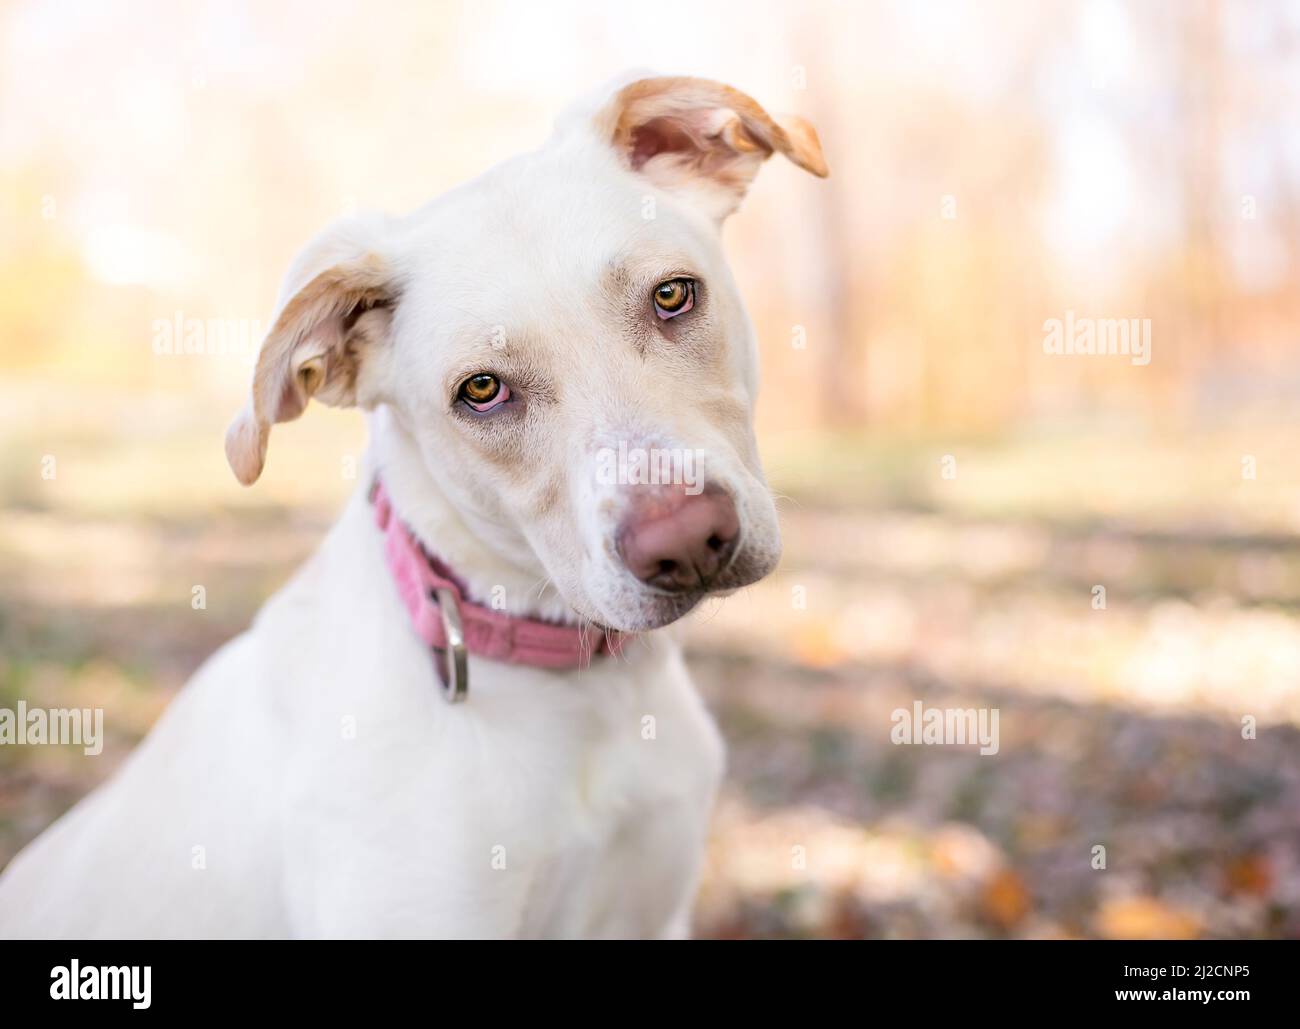 Un perro de raza mixta Retriever x Terrier con ectropión suave en sus ojos, escuchando con una inclinación de la cabeza Foto de stock